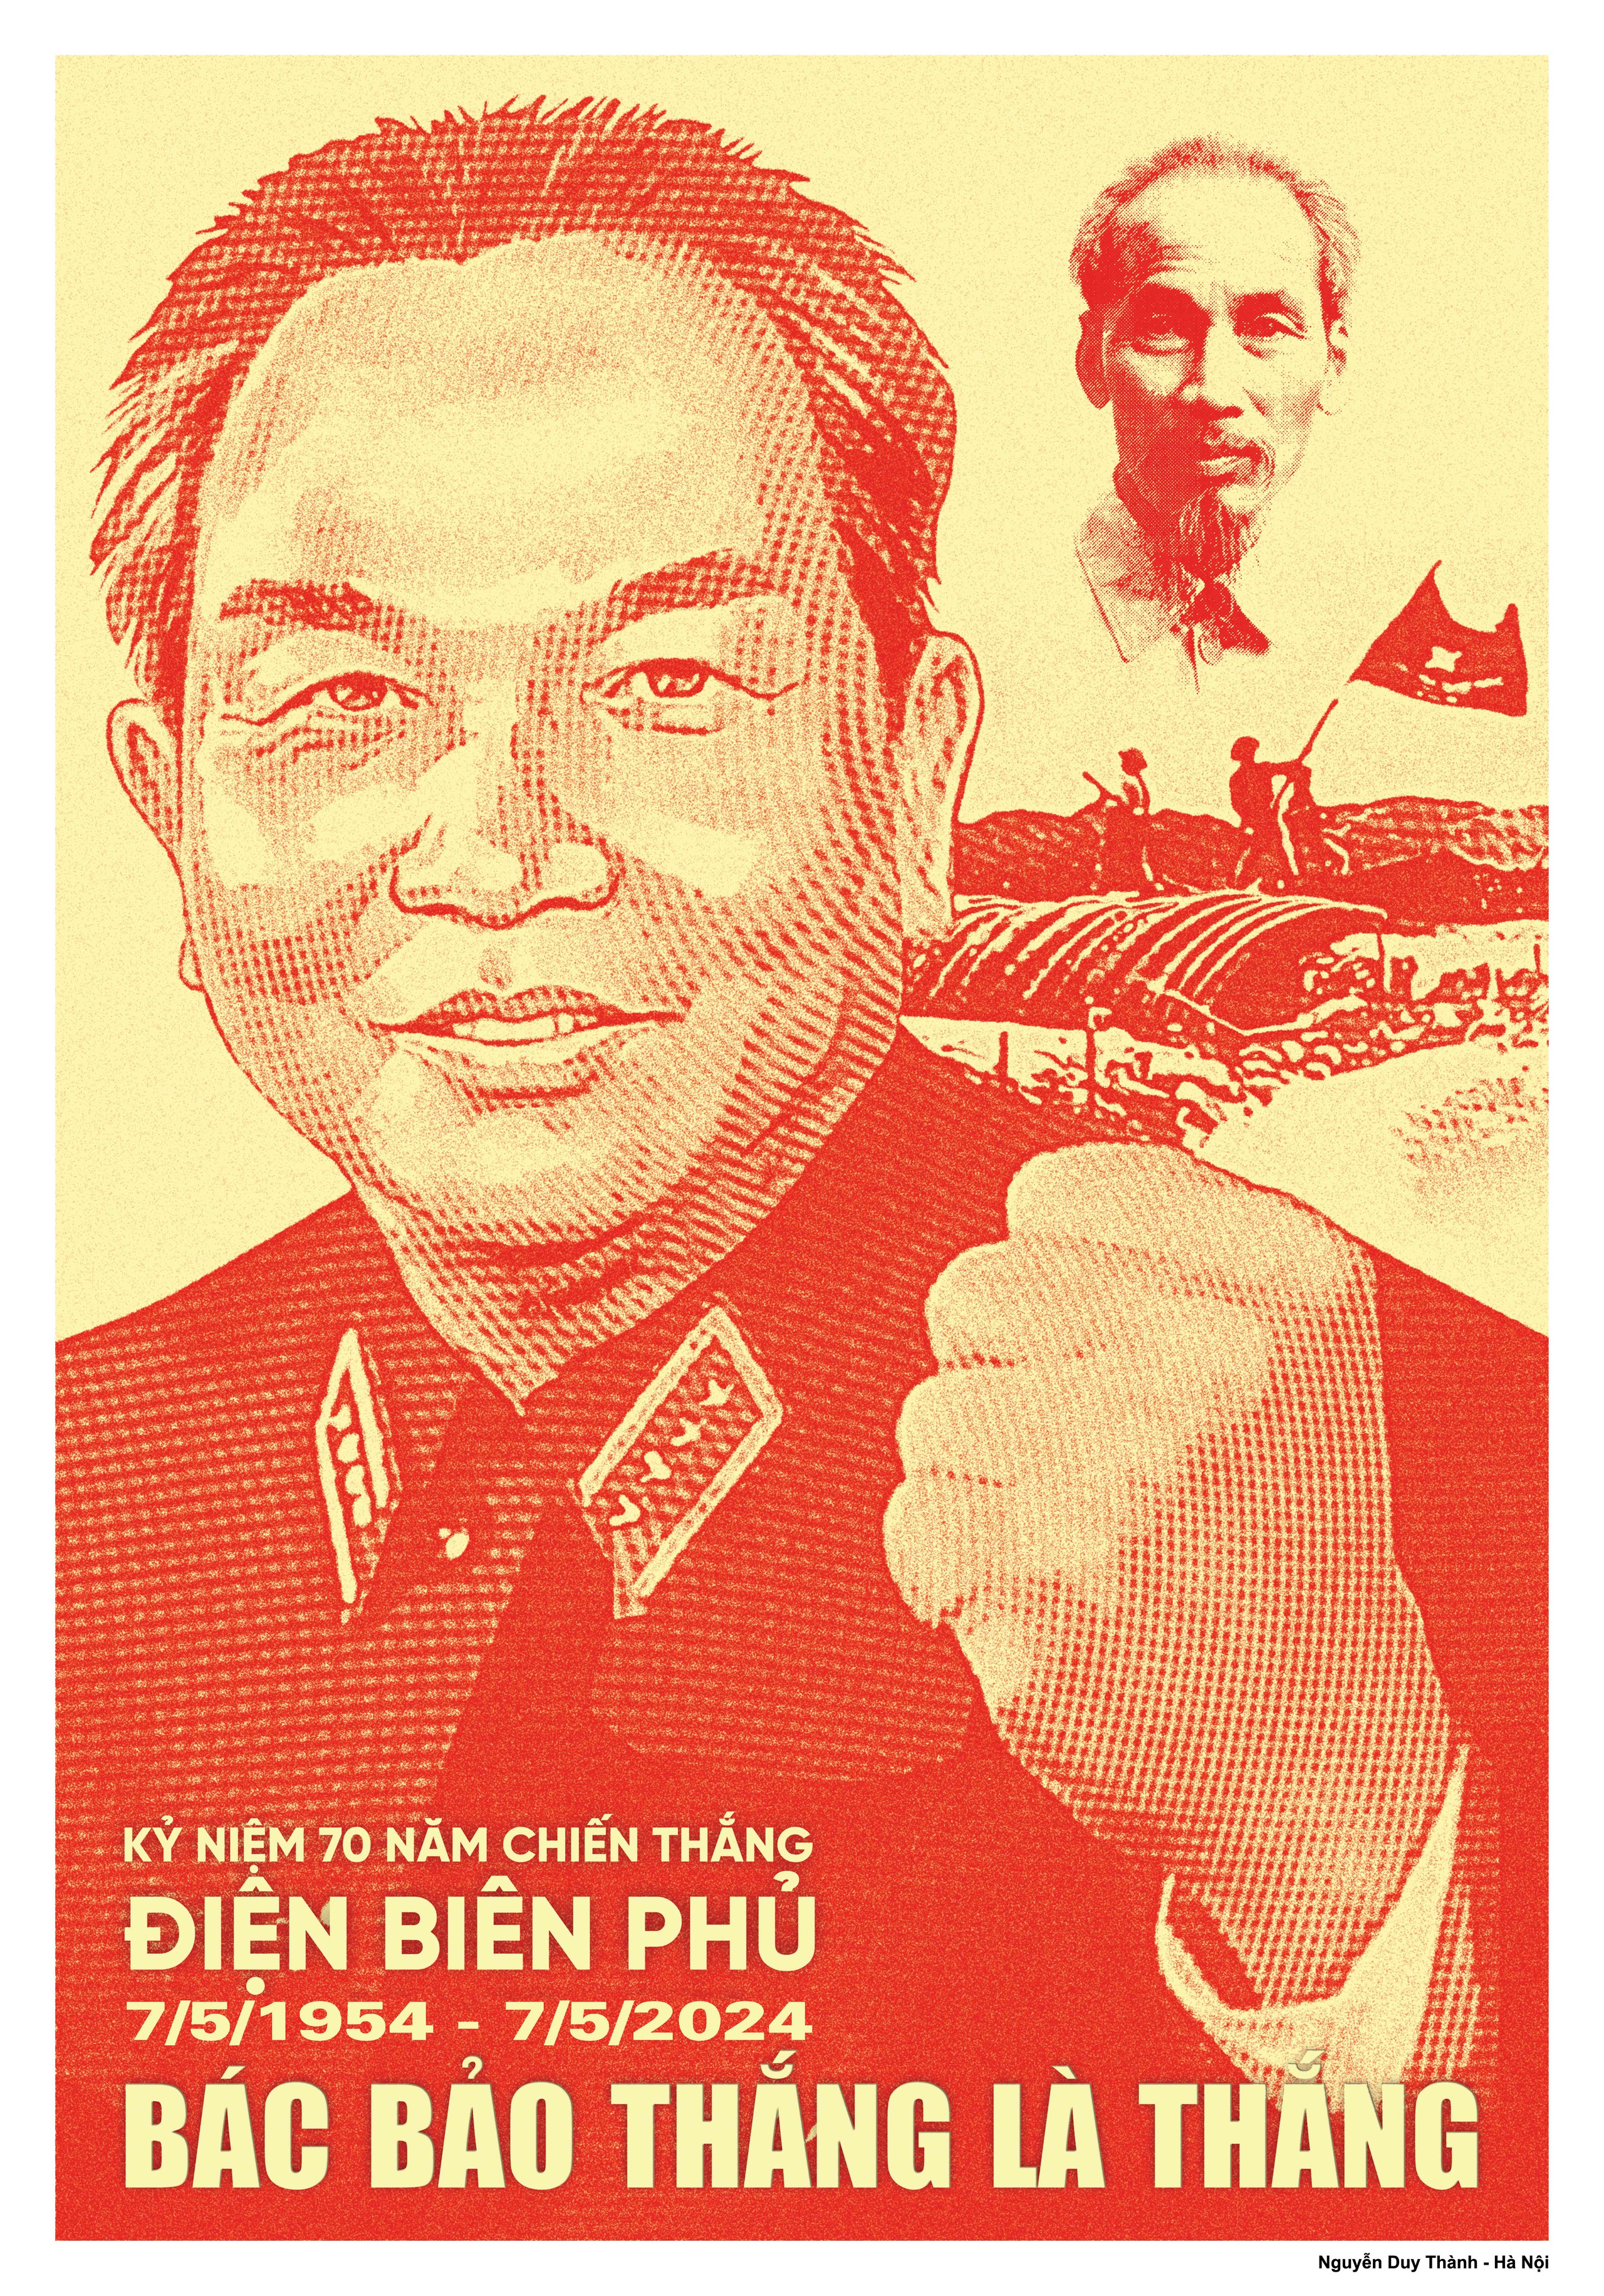 Hình ảnh Bác Hồ và Đại tướng Võ Nguyên Giáp trên tranh cổ động về 70 năm chiến thắng Điện Biên Phủ